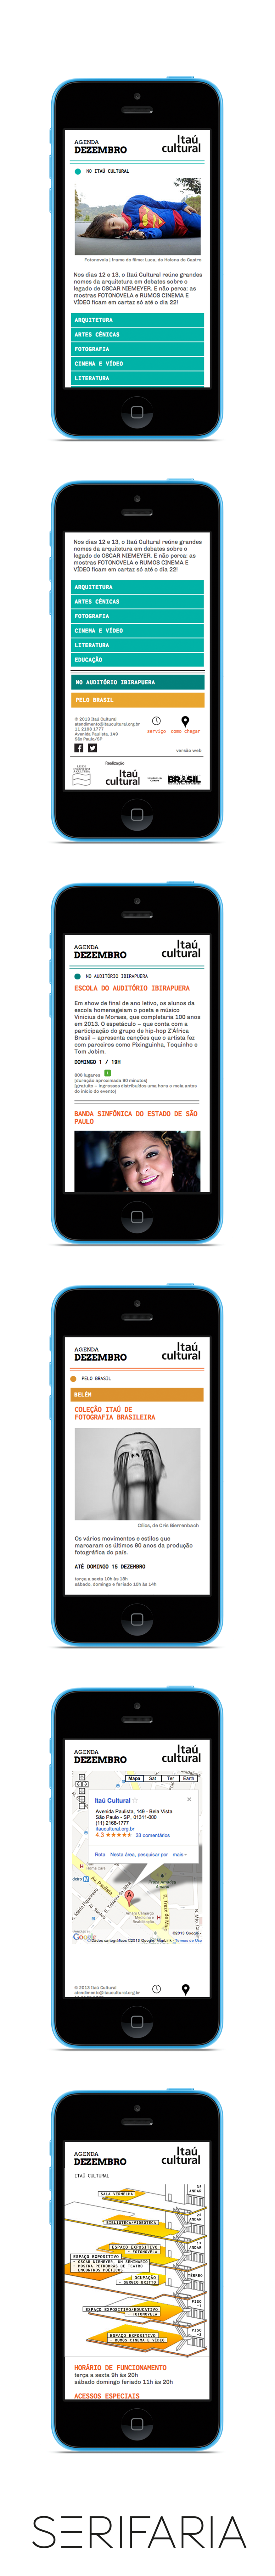 itaucultural serifaria Itaú mobile Mobilesite culture cultural design Webdesign adobemuse muse